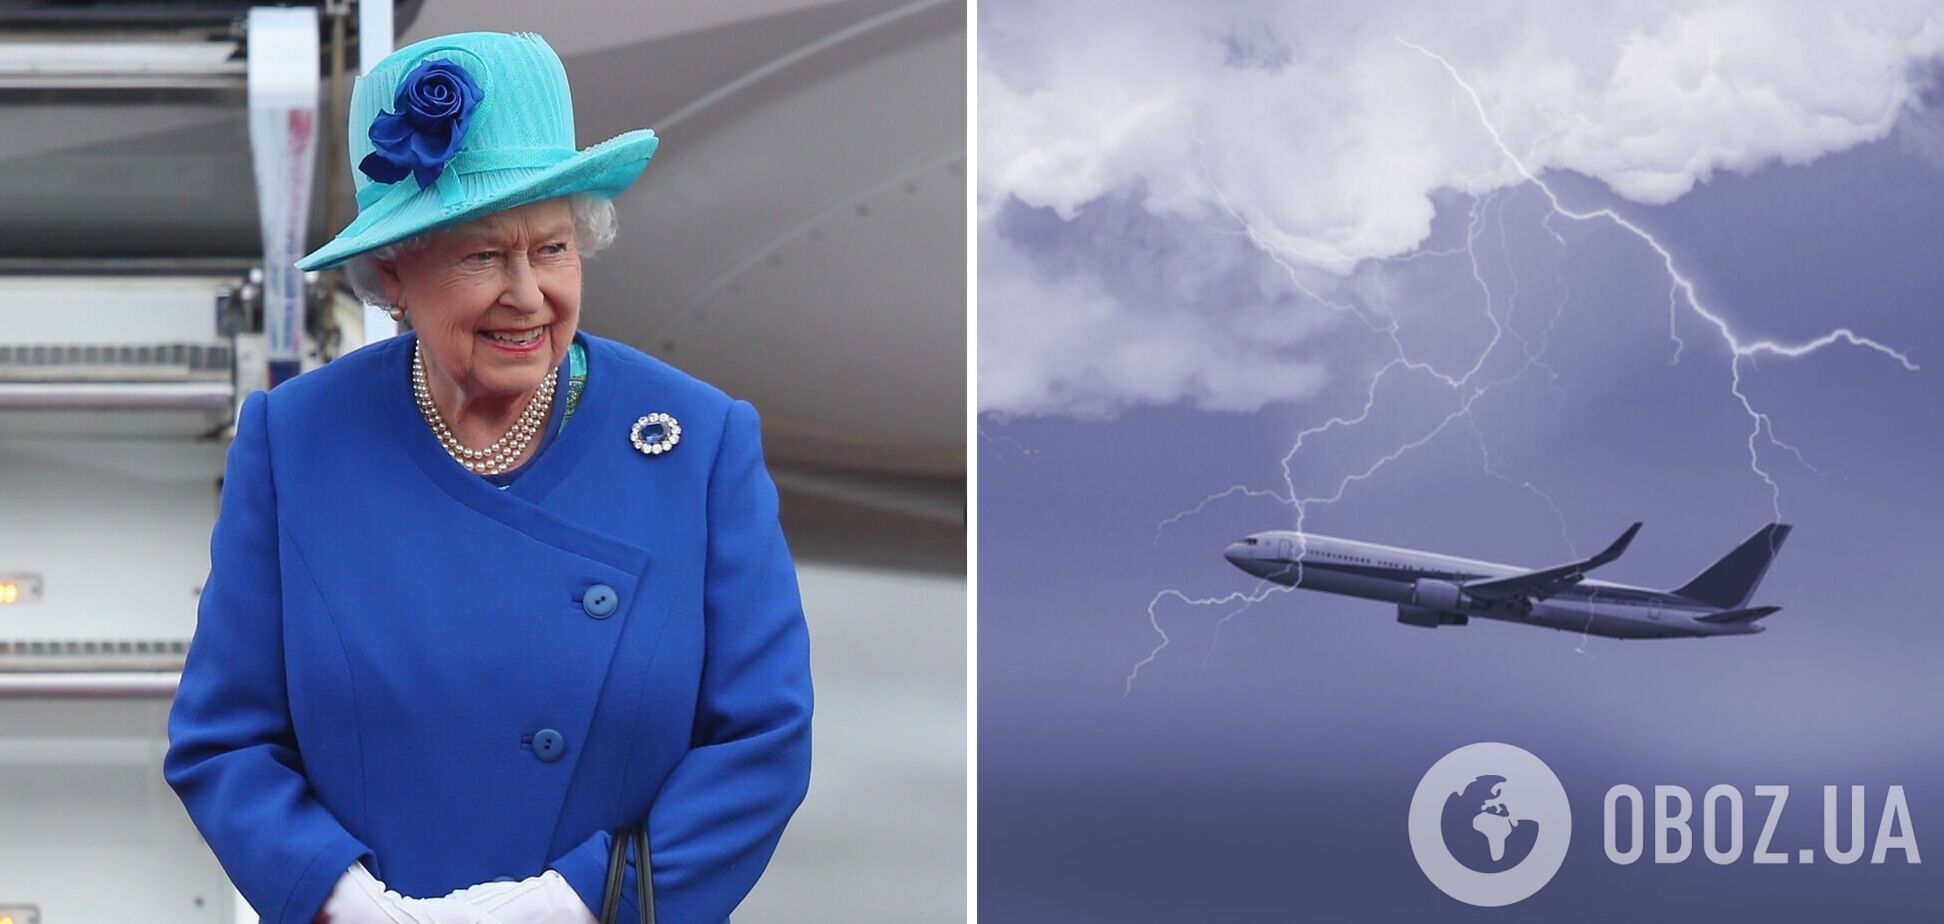 Єлизавета II потрапила в сильну бурю на літаку: пілоту не вдалося приземлитися з першого разу